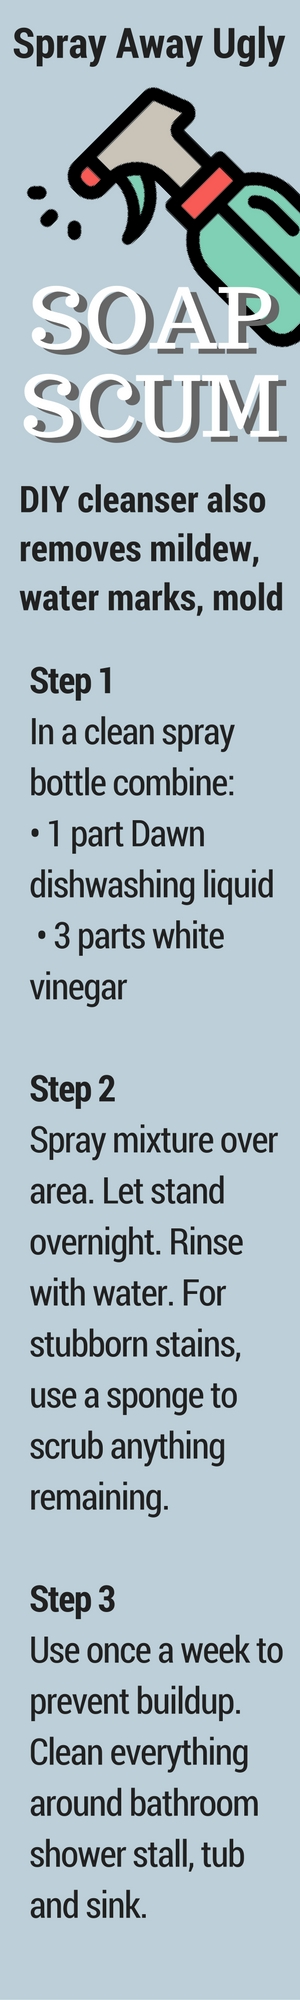 A graphic explaining how to spray away soap scum.